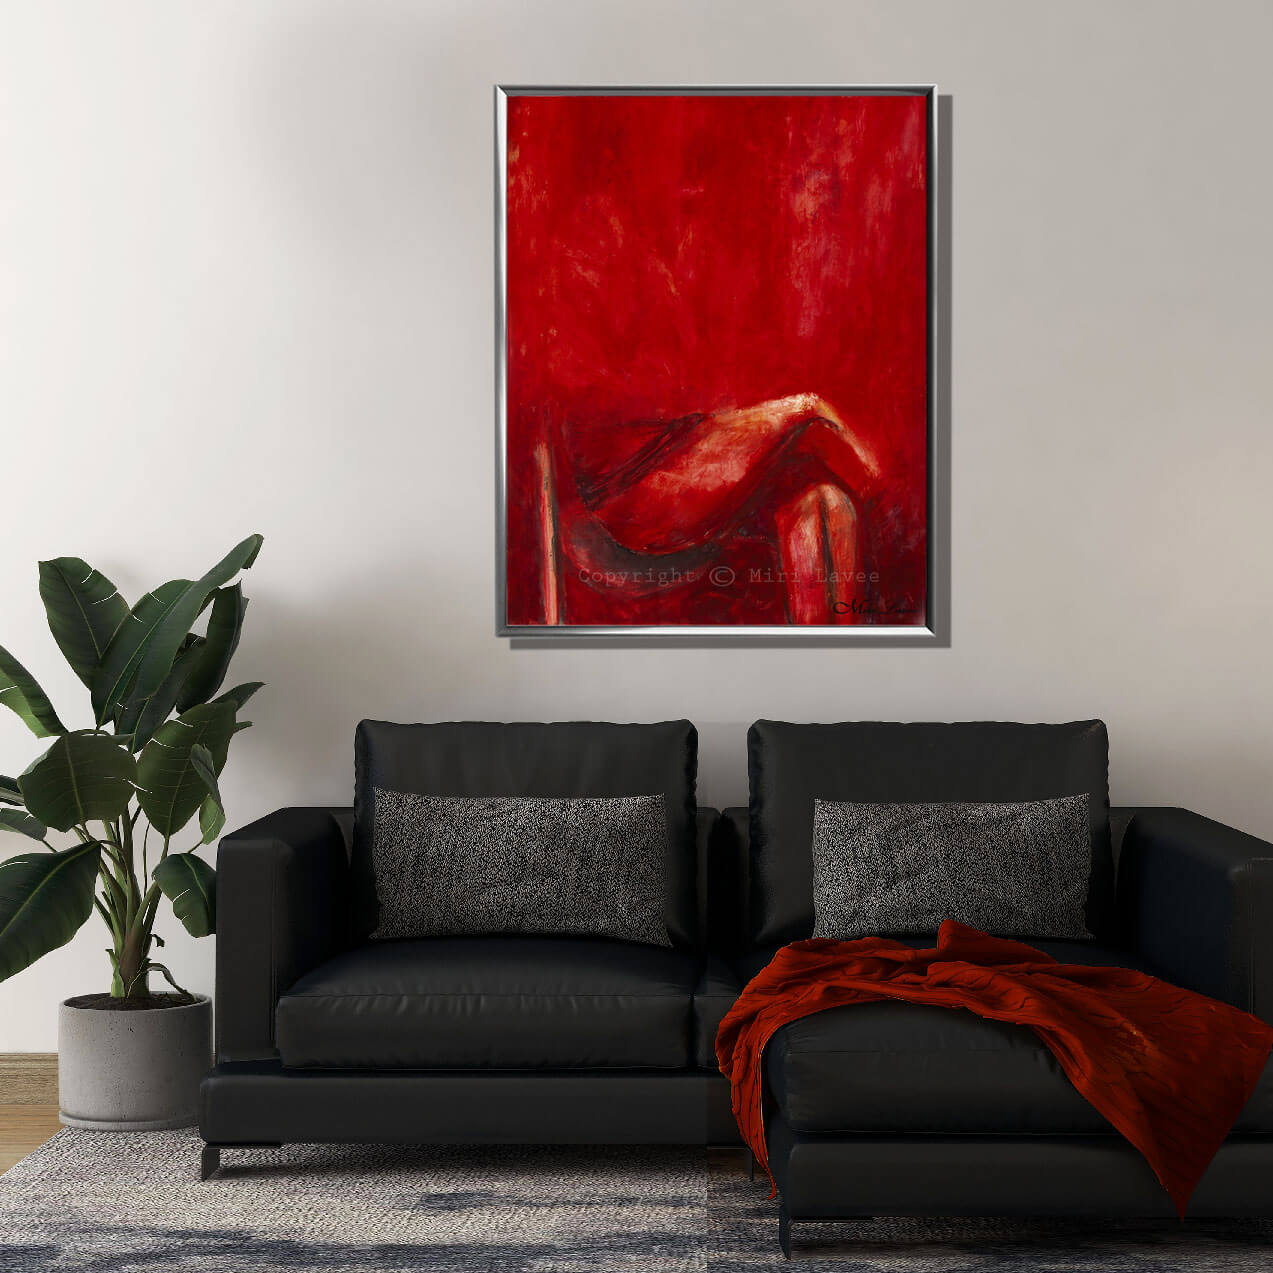 ציור גדול מופשט של דמות יושבת רגל על רגל באדום תמונה אדומה בסלון מעוצב מעל הספות ציירת מירי לביא